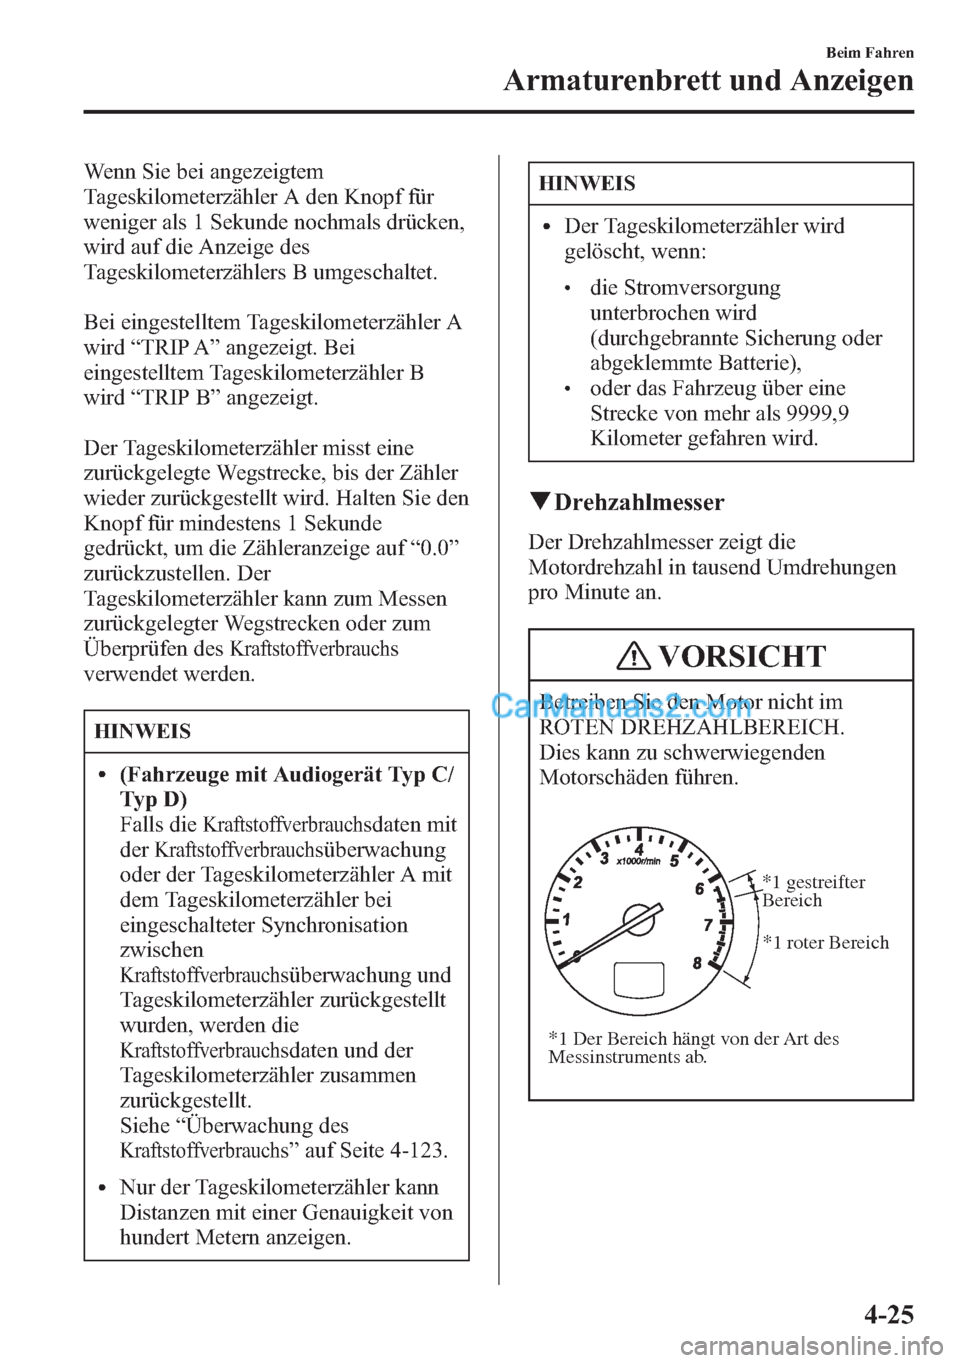 MAZDA MODEL CX-5 2015  Betriebsanleitung (in German) Wenn Sie bei angezeigtem
Tageskilometerzähler A den Knopf für
weniger als 1 Sekunde nochmals drücken,
wird auf die Anzeige des
Tageskilometerzählers B umgeschaltet.
Bei eingestelltem Tageskilomete